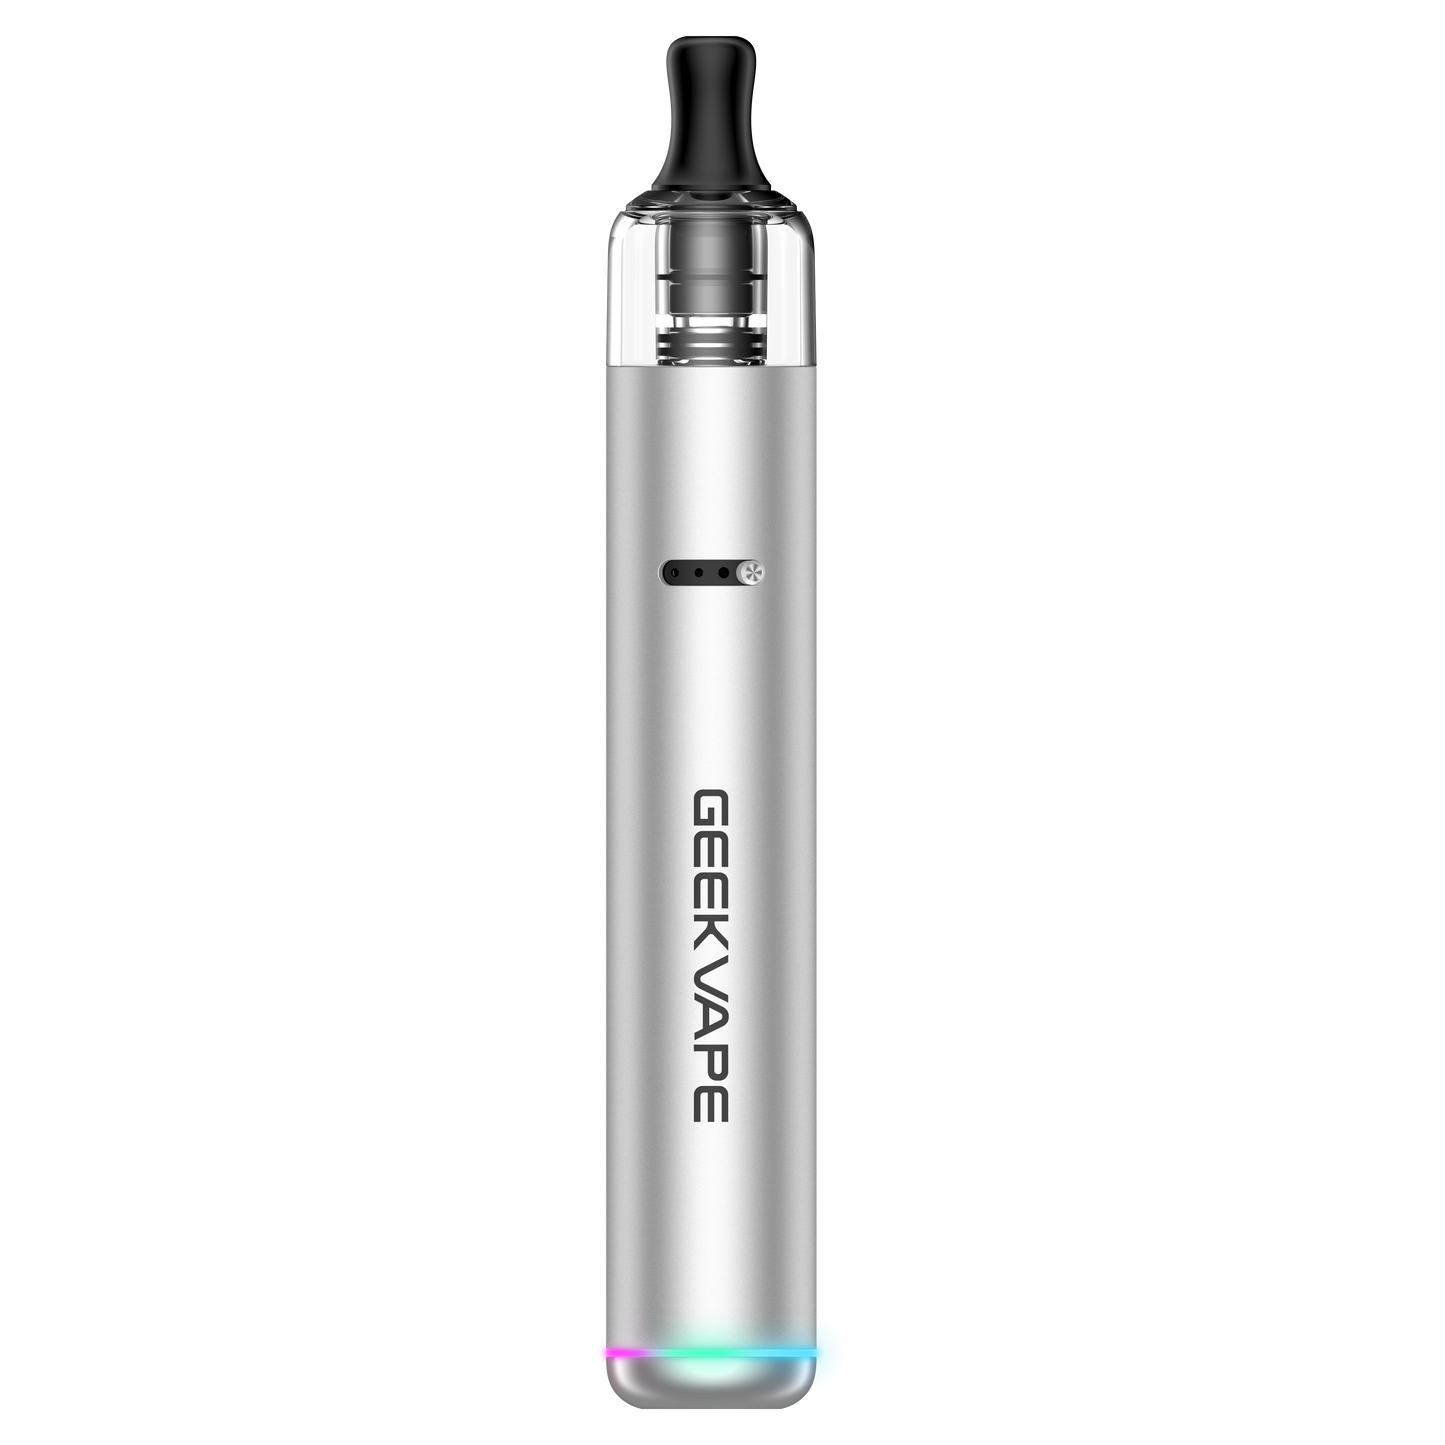 Geekvape WENAX S3 (Stylus 3) Vape Pen Kit 1100mAh Best Sales Price - Vape Kits